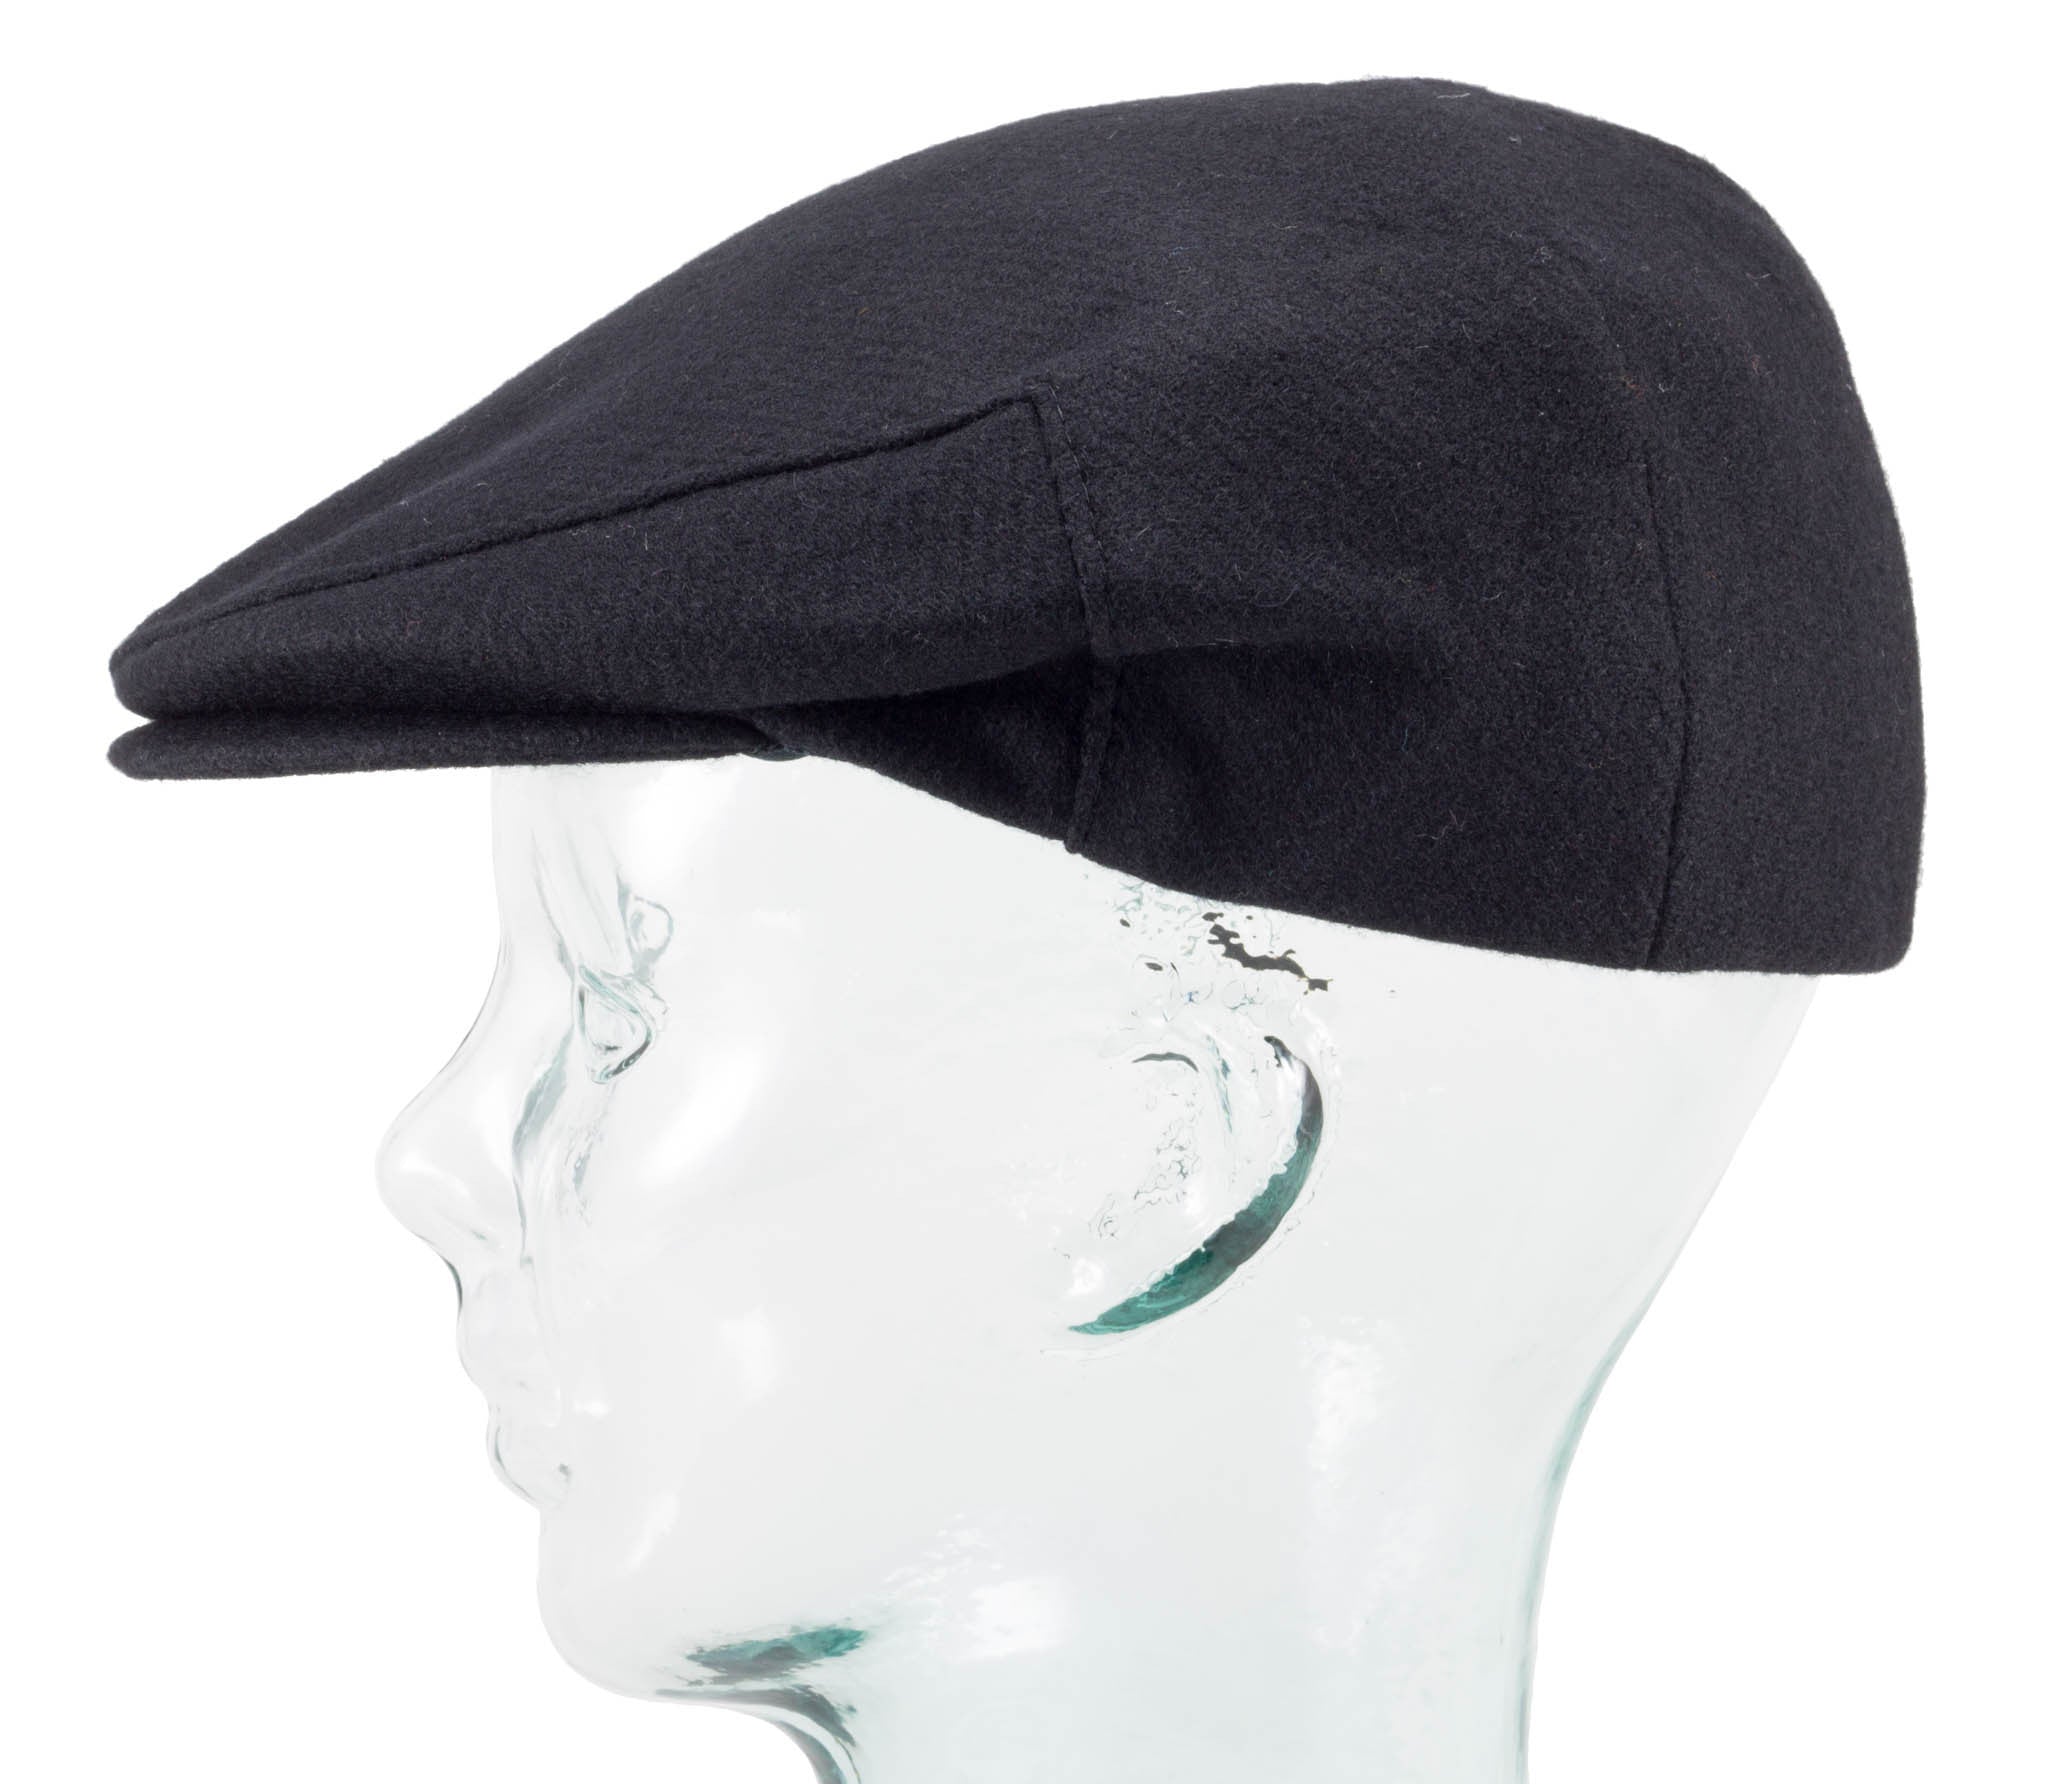 Tweed Caps - Vintage Style Cap